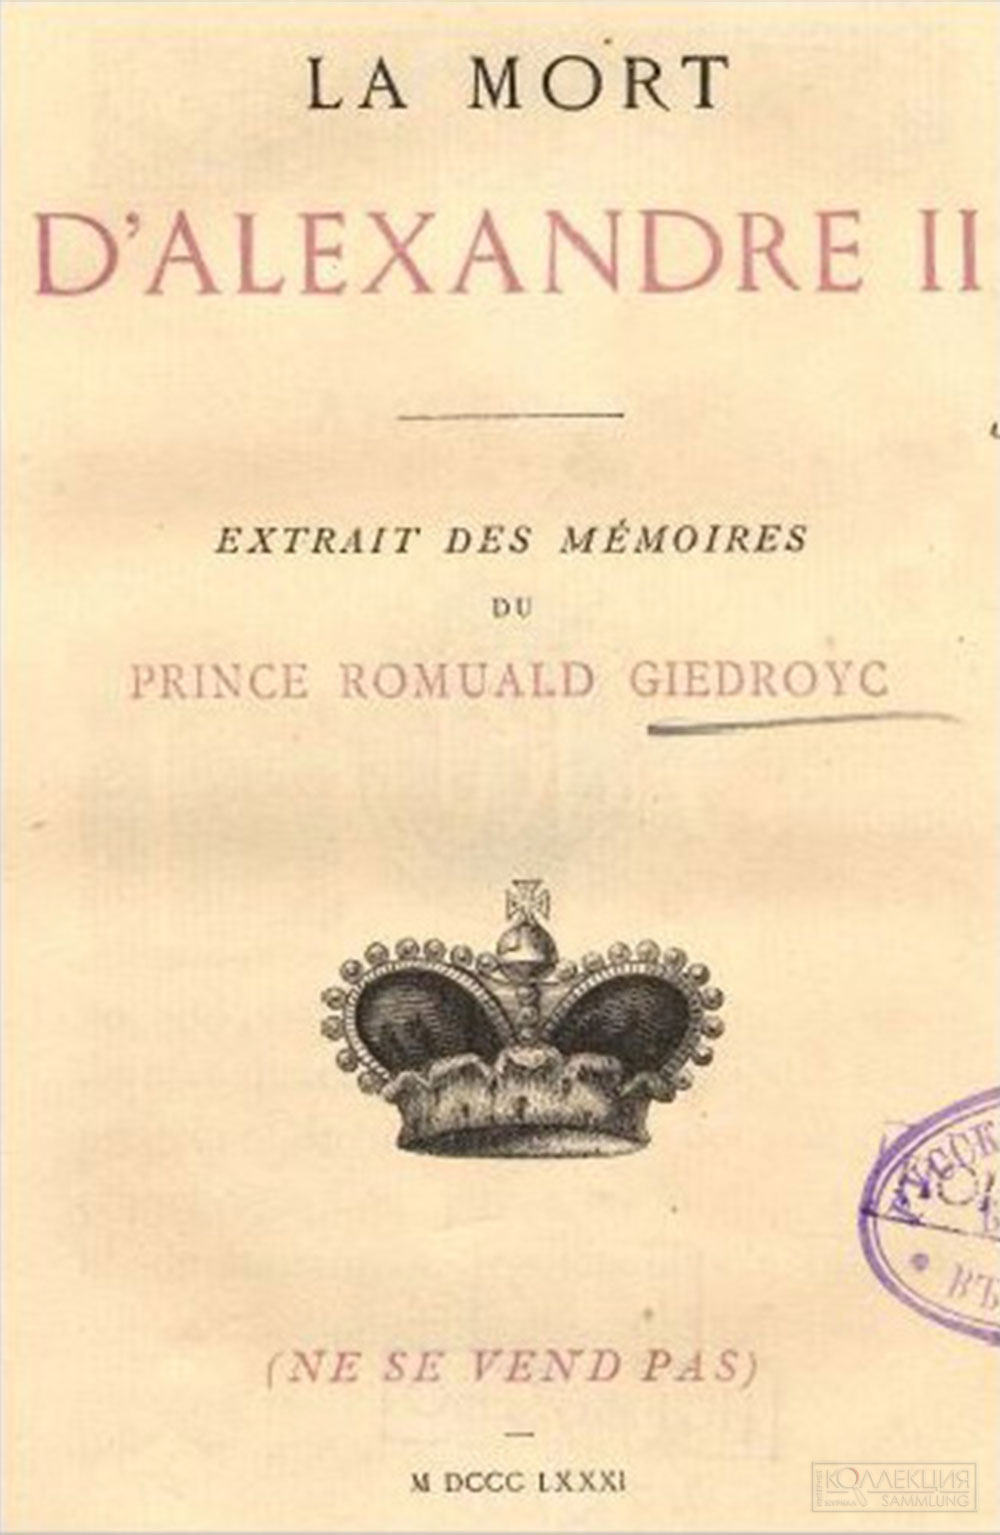 Титульный лист книги La mort d'Alexandre II: extrait des Mémoires du prince Romuald Giedroyc, Evreux : impr. de C. Hérissey, 1881, источник: rsl.ru